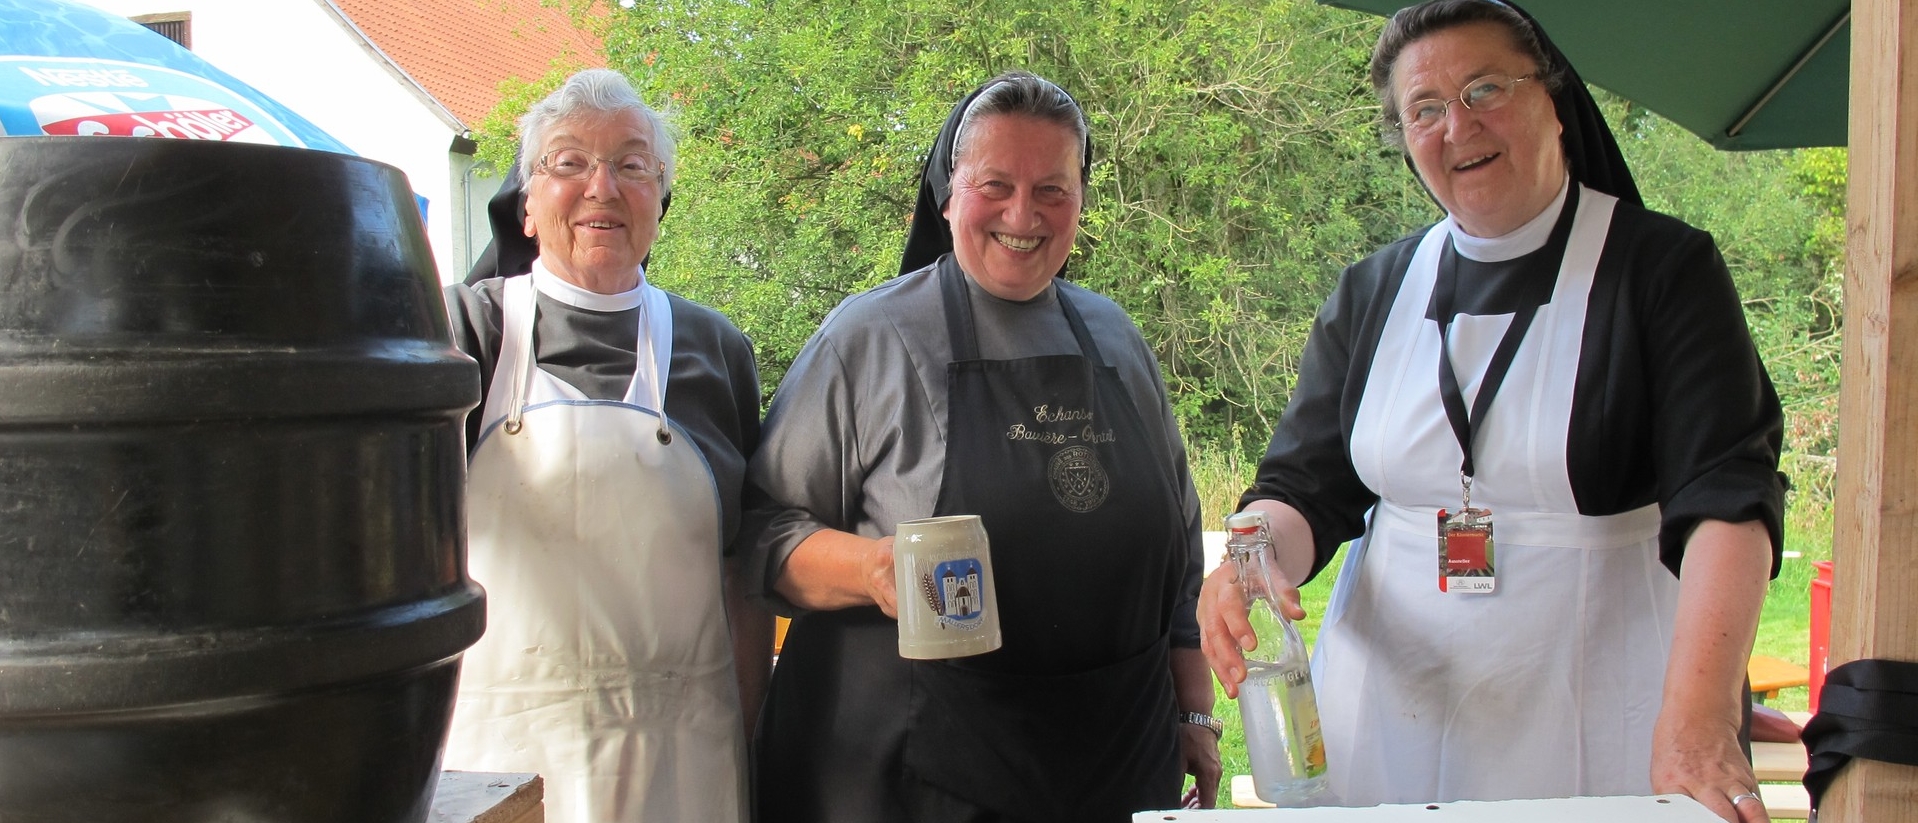 Soeur Doris (au milieu) vend sa bière lors d'un marché  monastique | DR 